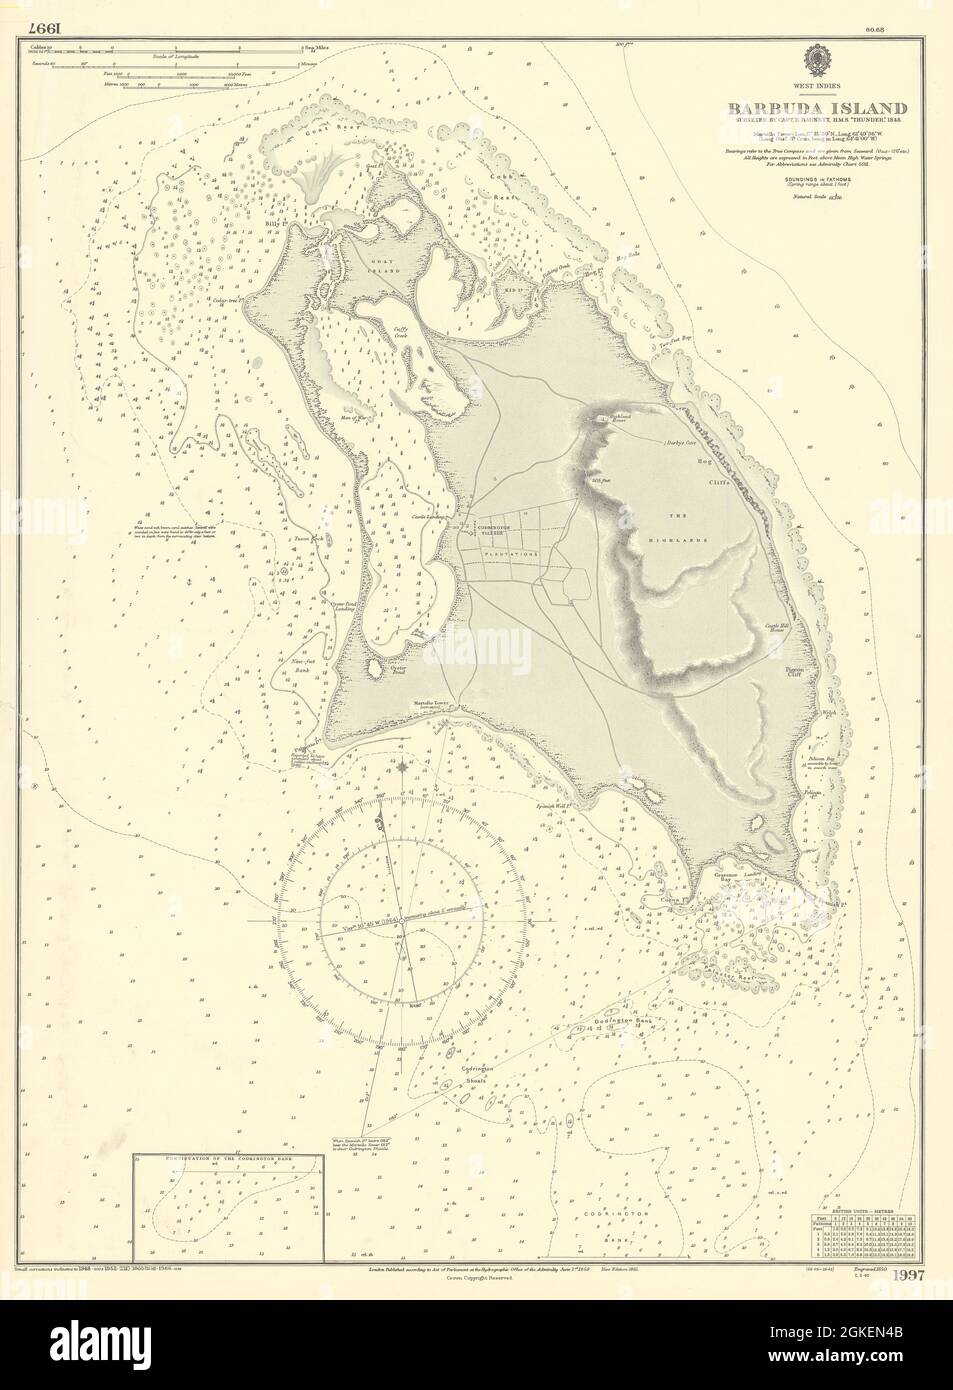 Isla Barbuda. Caribe de las Indias Occidentales. Carta marítima DEL ALMIRANTAZGO 1850 (1966) mapa antiguo Foto de stock